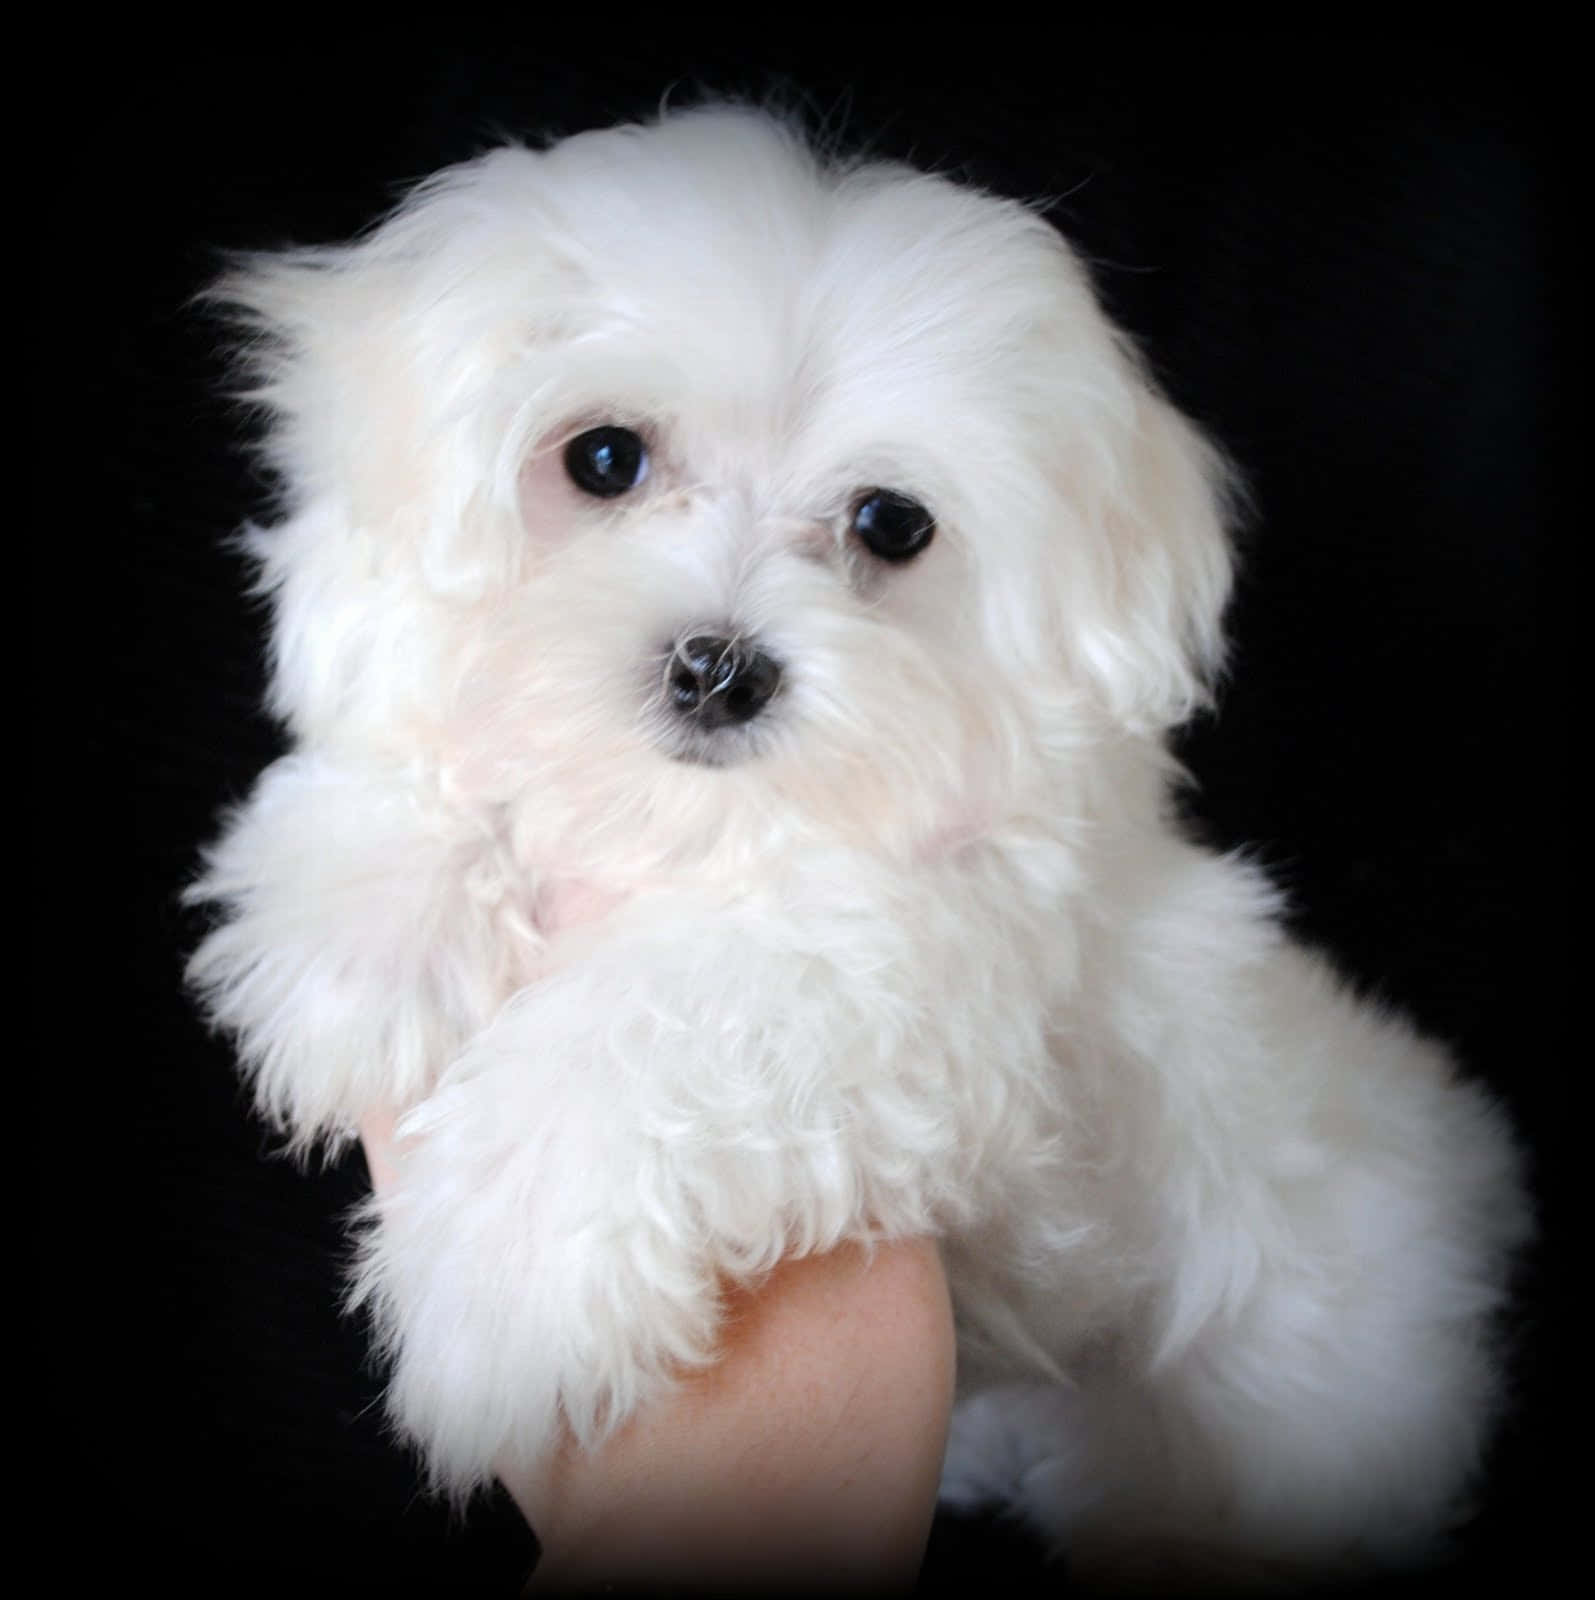 "Cuteness Overload: Adorable Maltese Puppy"